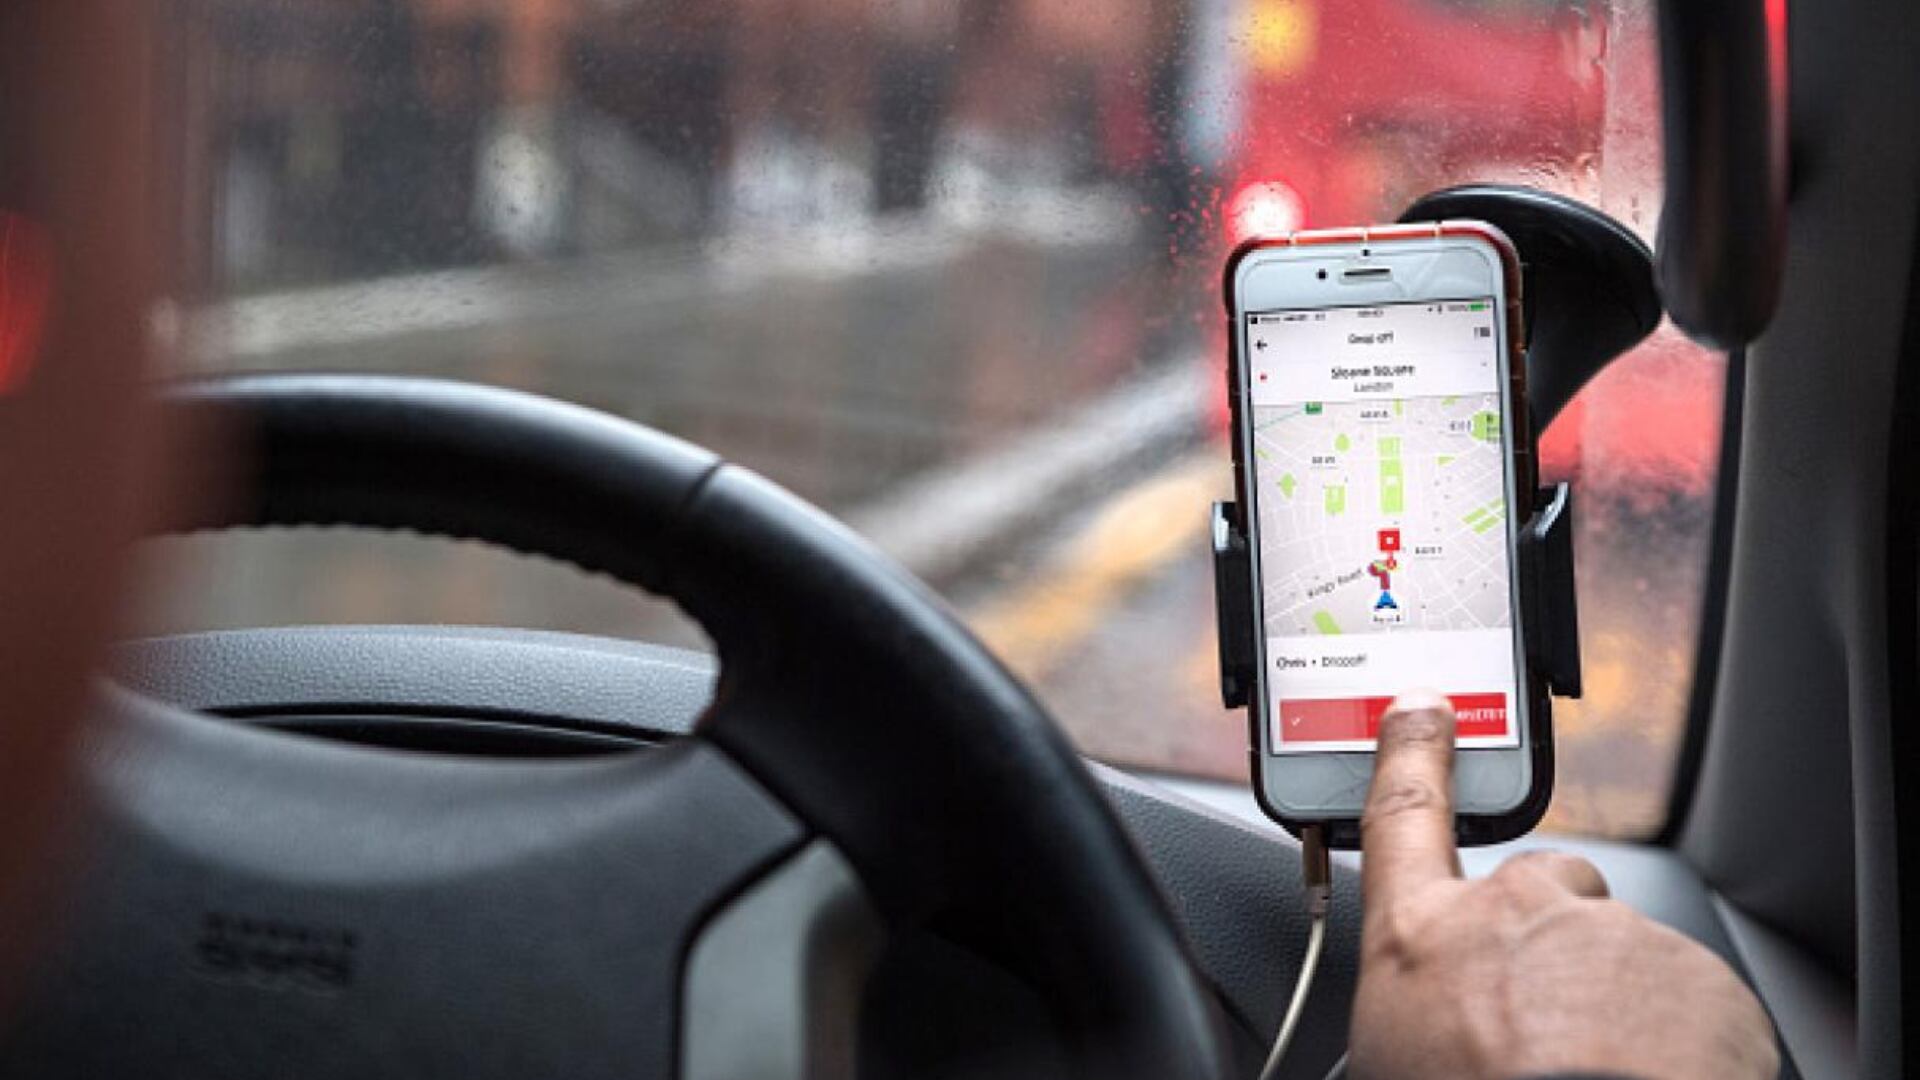 “Checa tu taxi”, lanzada en agosto del 2018, está nuevamente disponible para los consumidores.